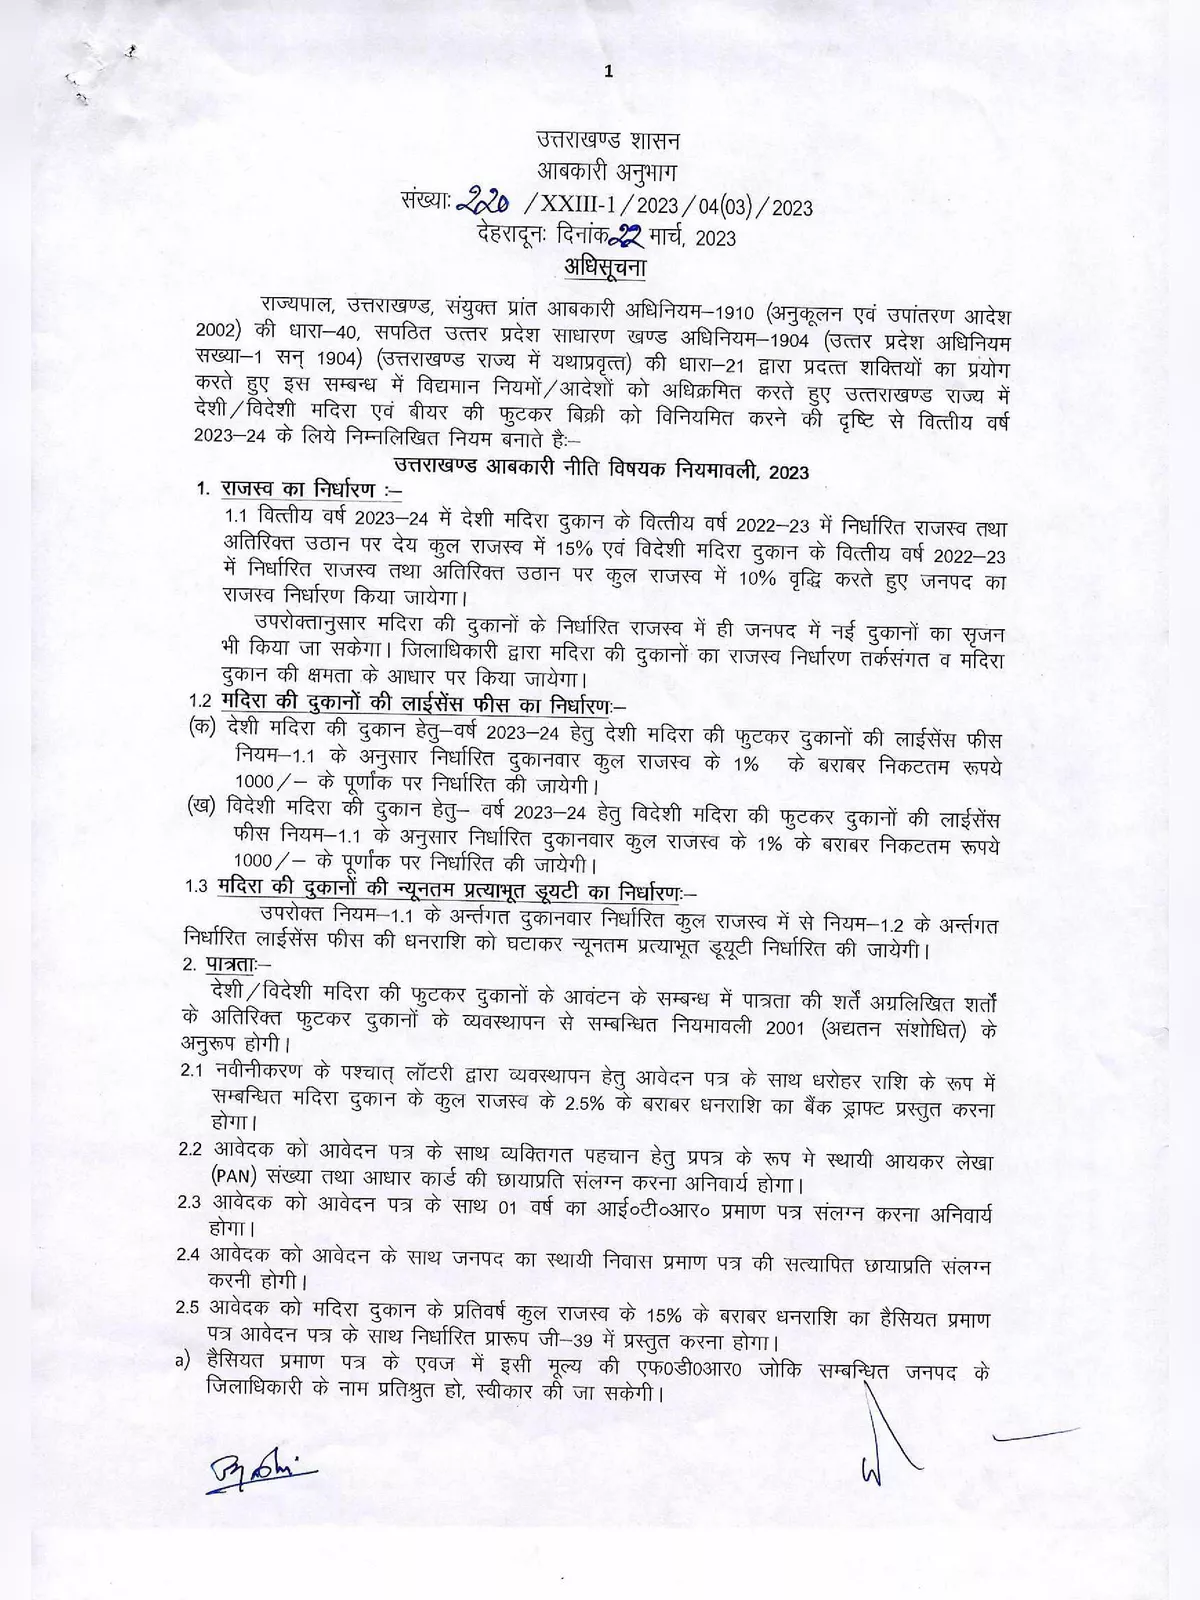 Uttarakhand Excise Policy 2023-24